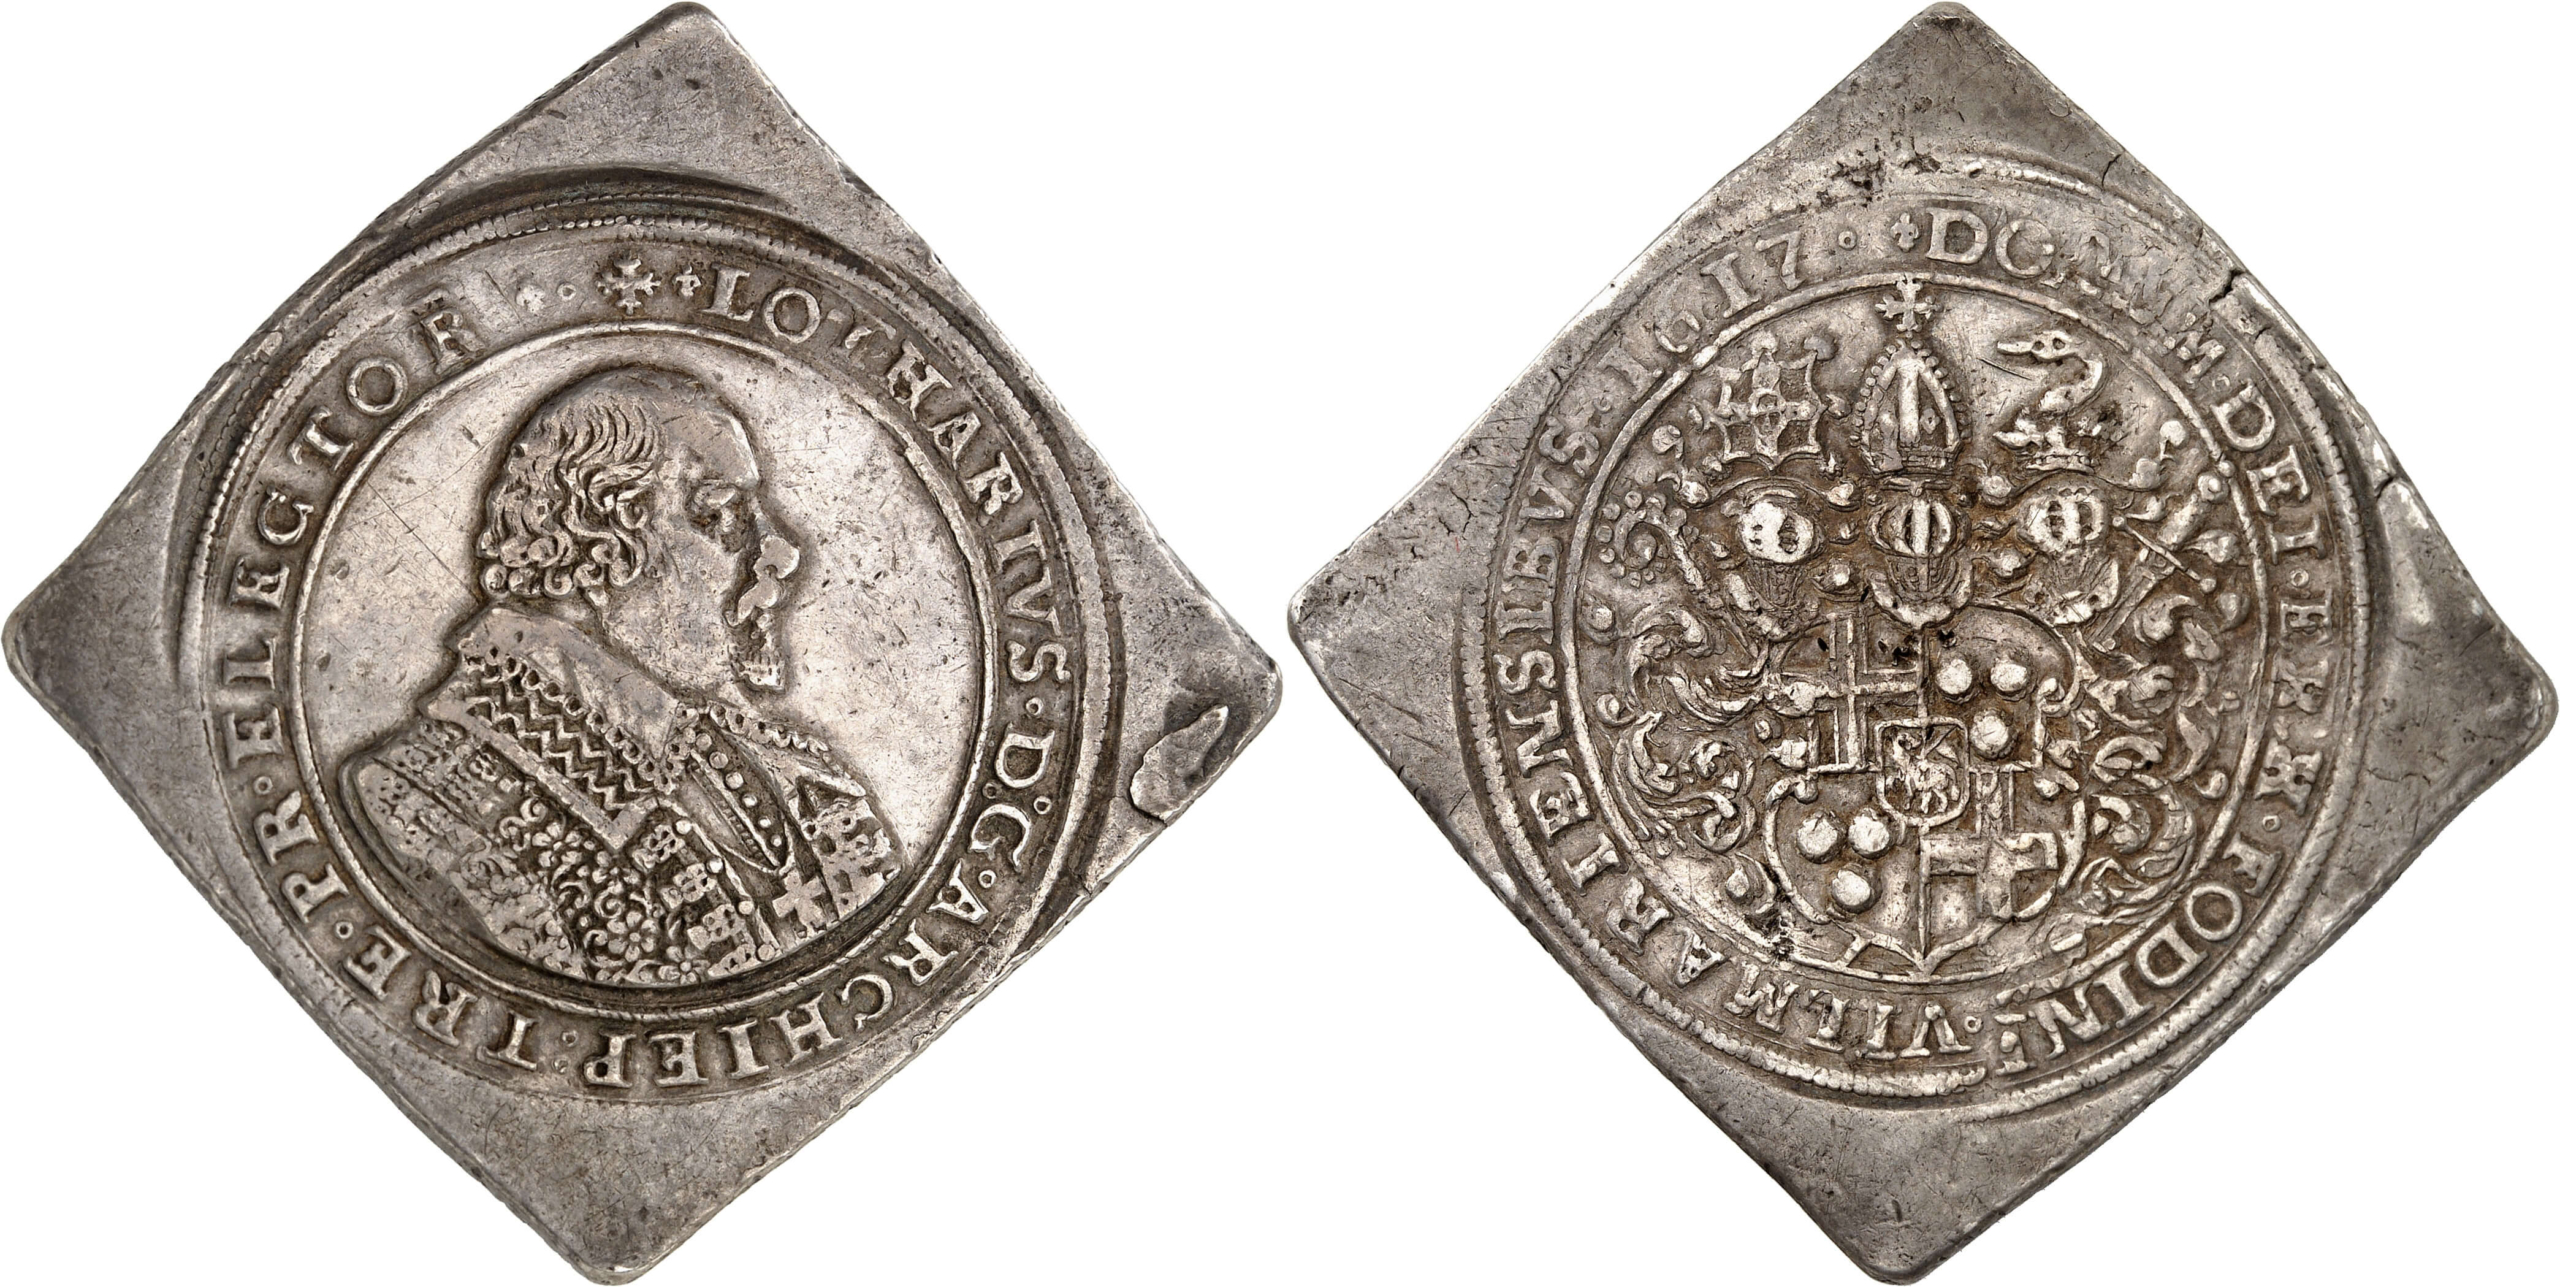 No. 5272. Trier. Lothar von Metternich, 1599-1623. Double 1617 reichstalerklippe, Koblenz. Yield of the Vilmar mines. Very rare. Very fine. Estimate: 10,000 euros. Hammer price: 12,000 euros.